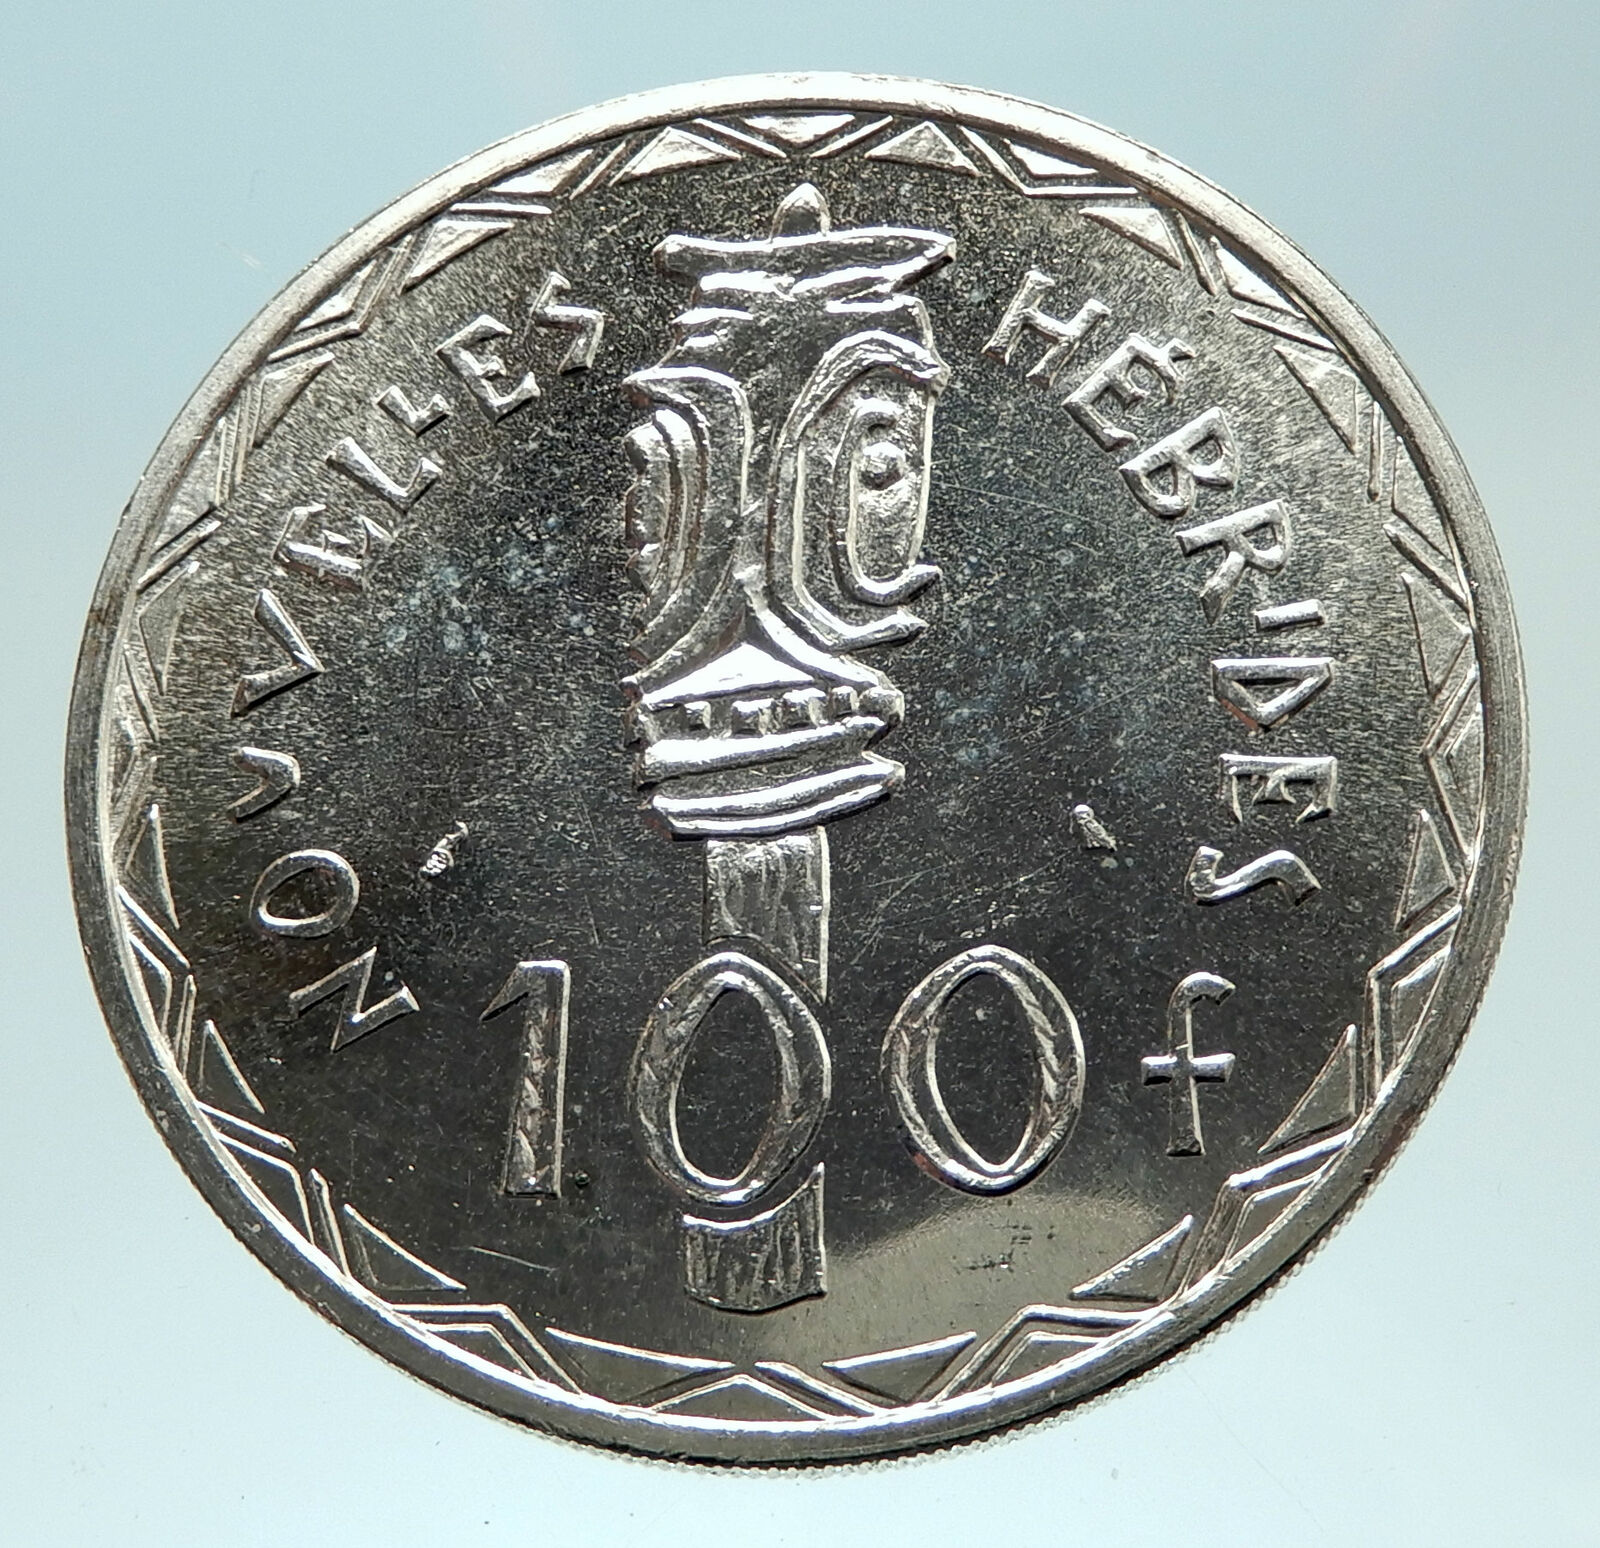 1966 New Hebrides Colony of France 100 Francs Silver BISJ Totem Pole Coin i76784